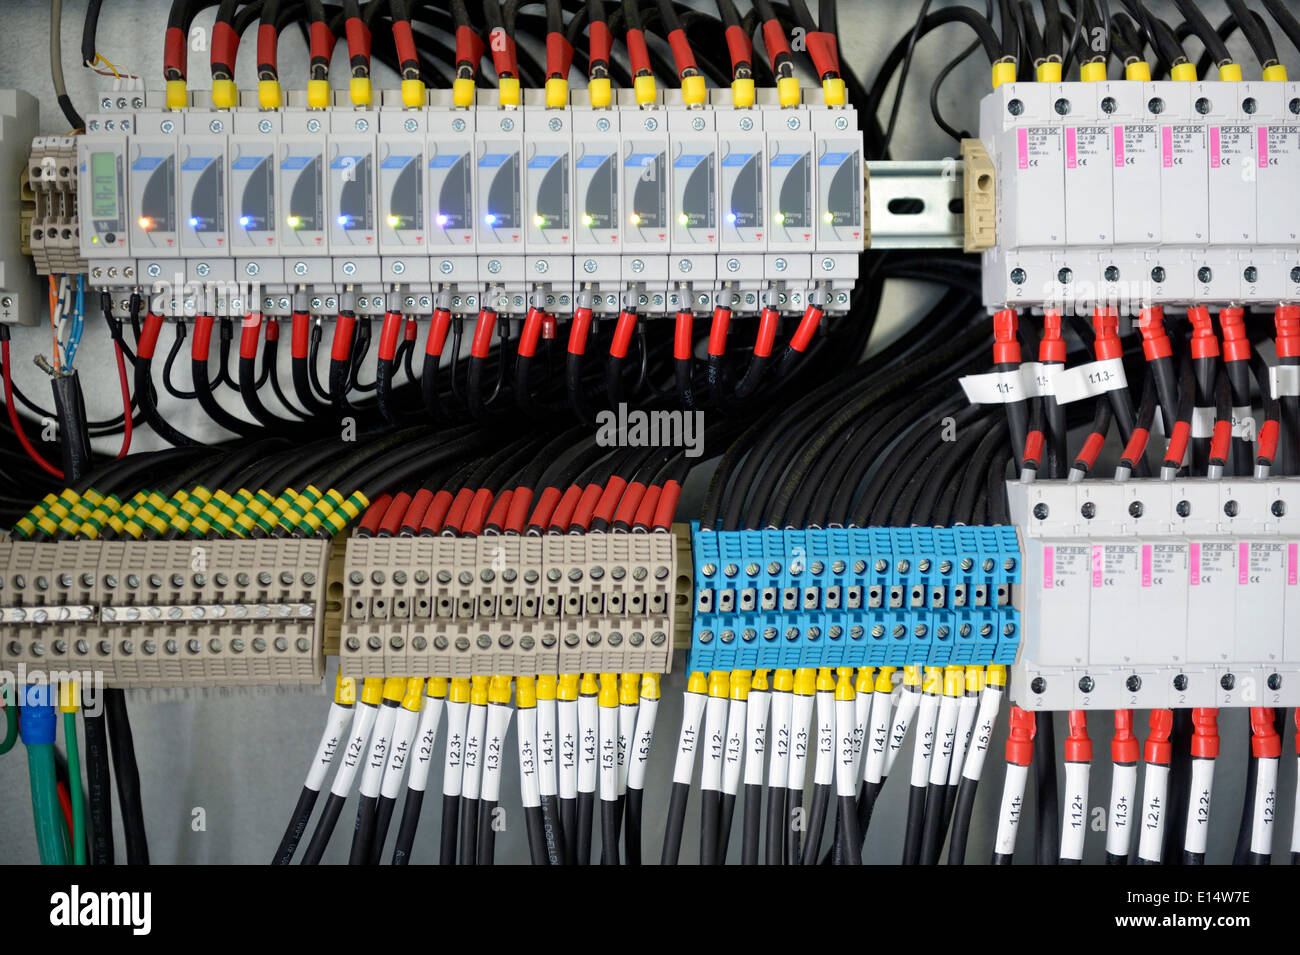 Sicherungskasten mit vielen Kabeln Stockfotografie - Alamy